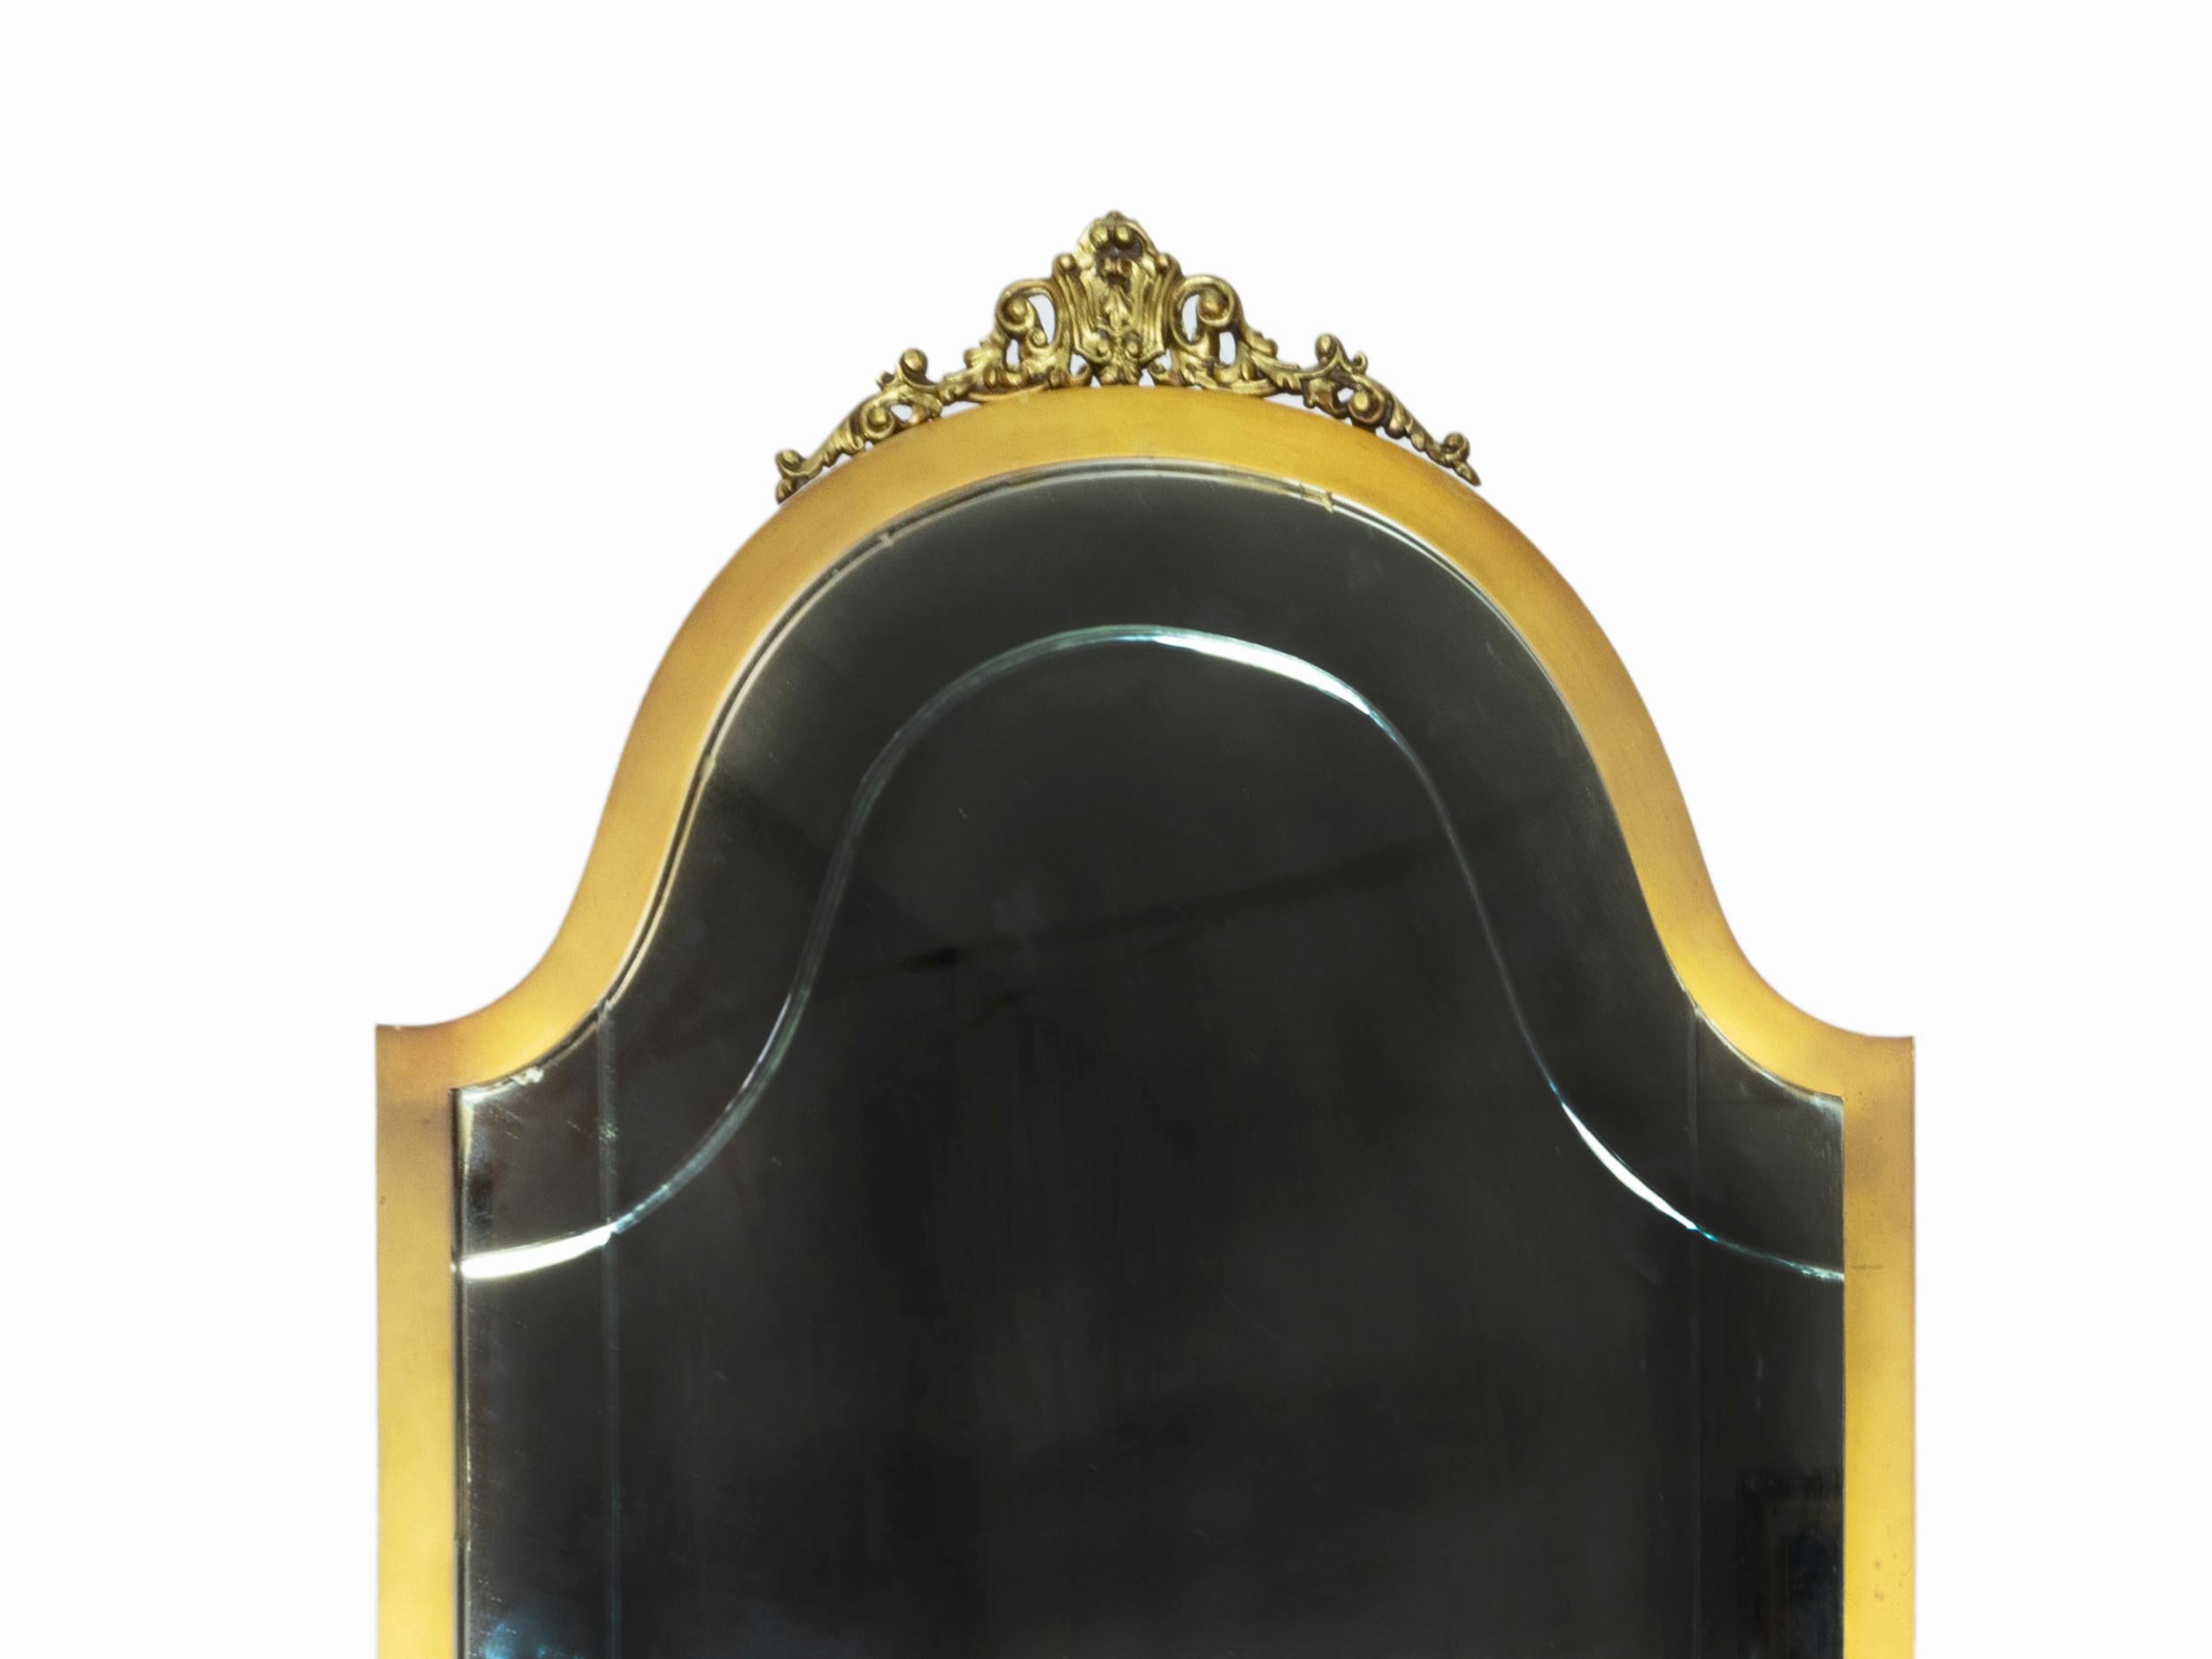 Goldener Spiegel im Louis XV-Stil mit moderner Note.
